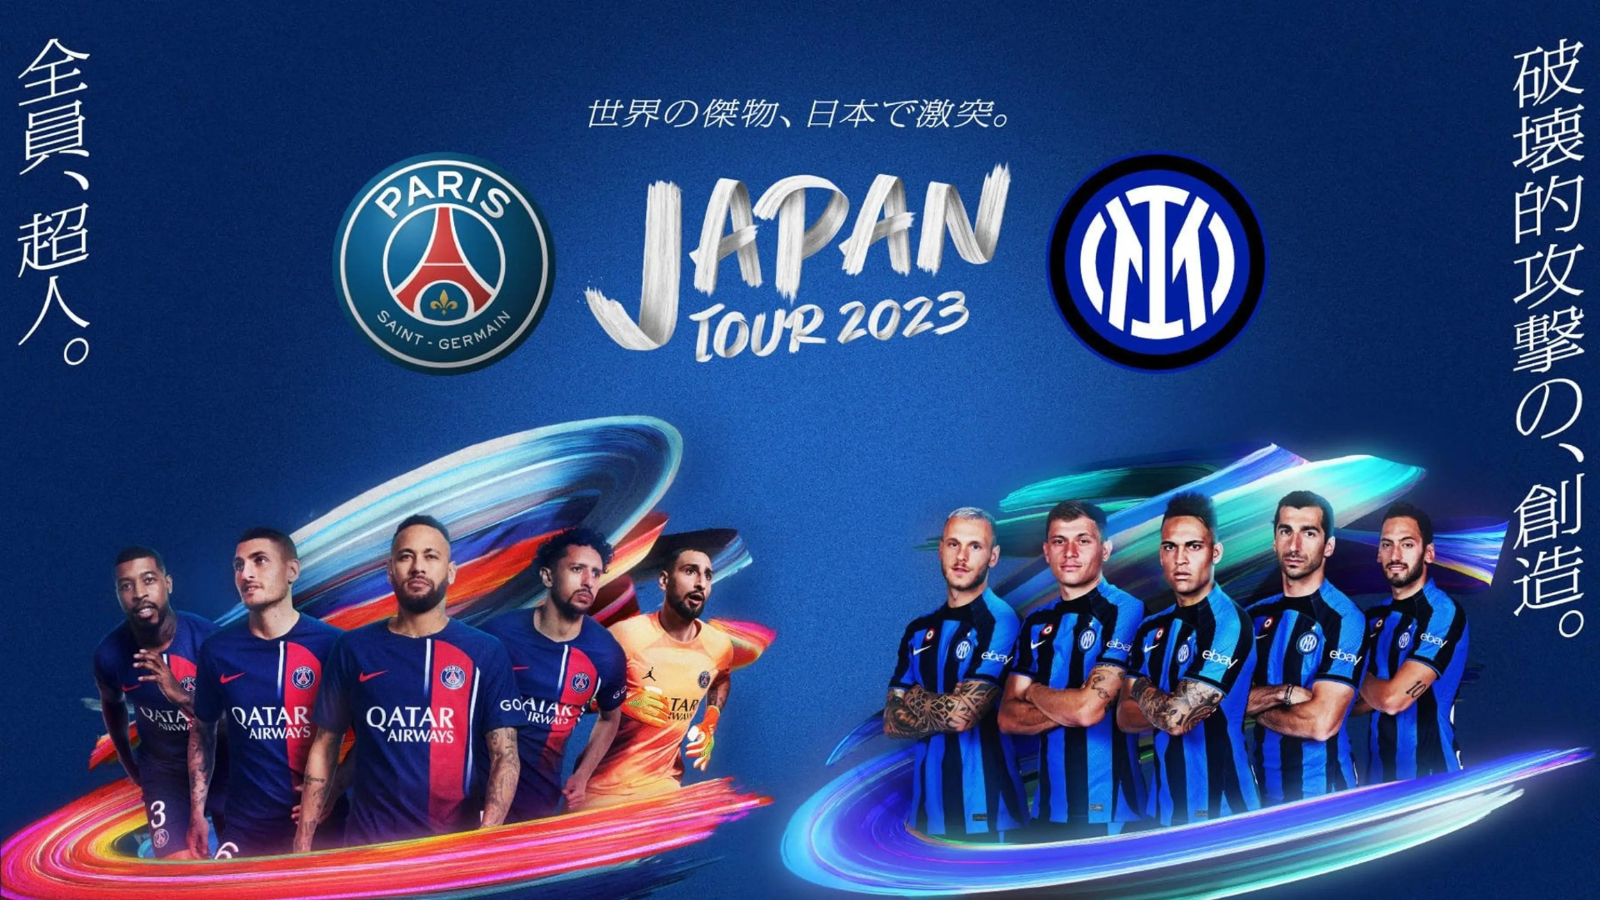 「Paris Saint-Germain JAPAN TOUR2023」の企画制作として参画いたします。